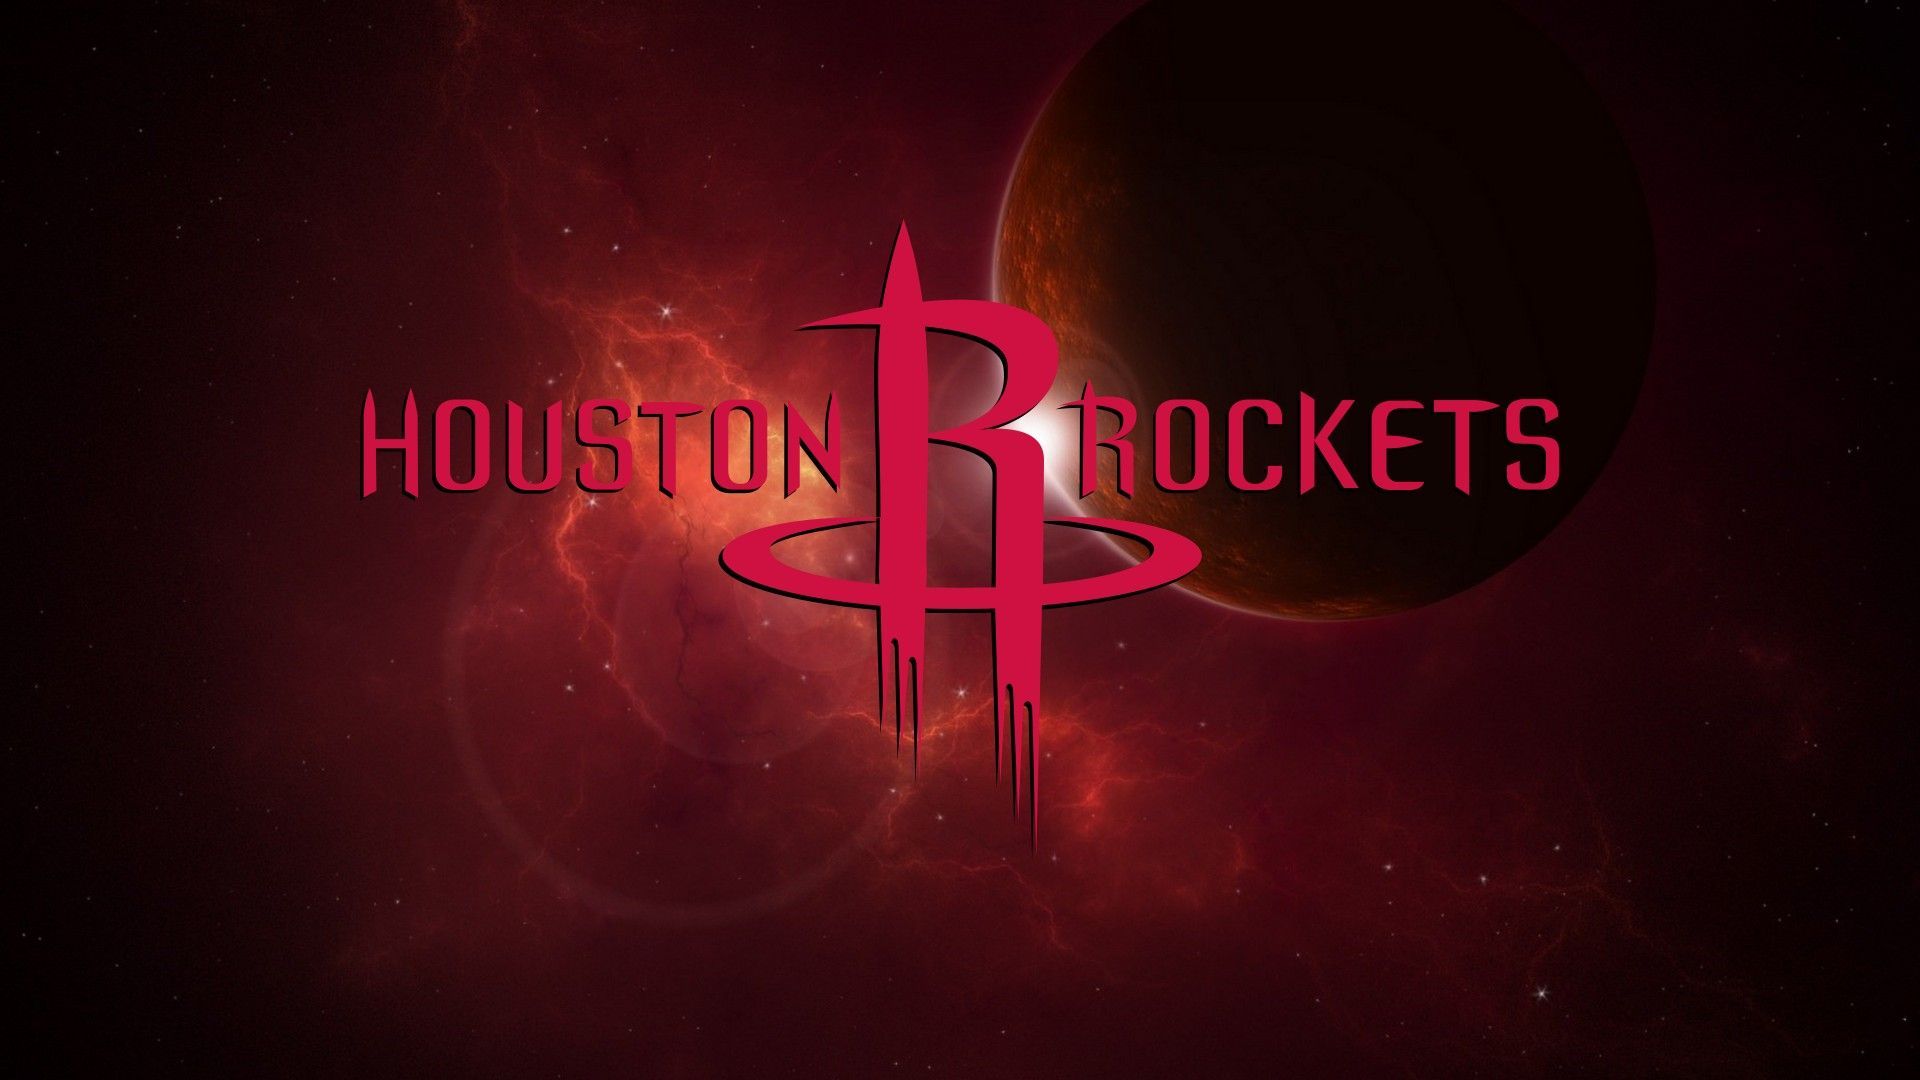 HOUSTON ROCKETS DESKTOP WALLPAPER. Houston rockets, Houston, Rocket